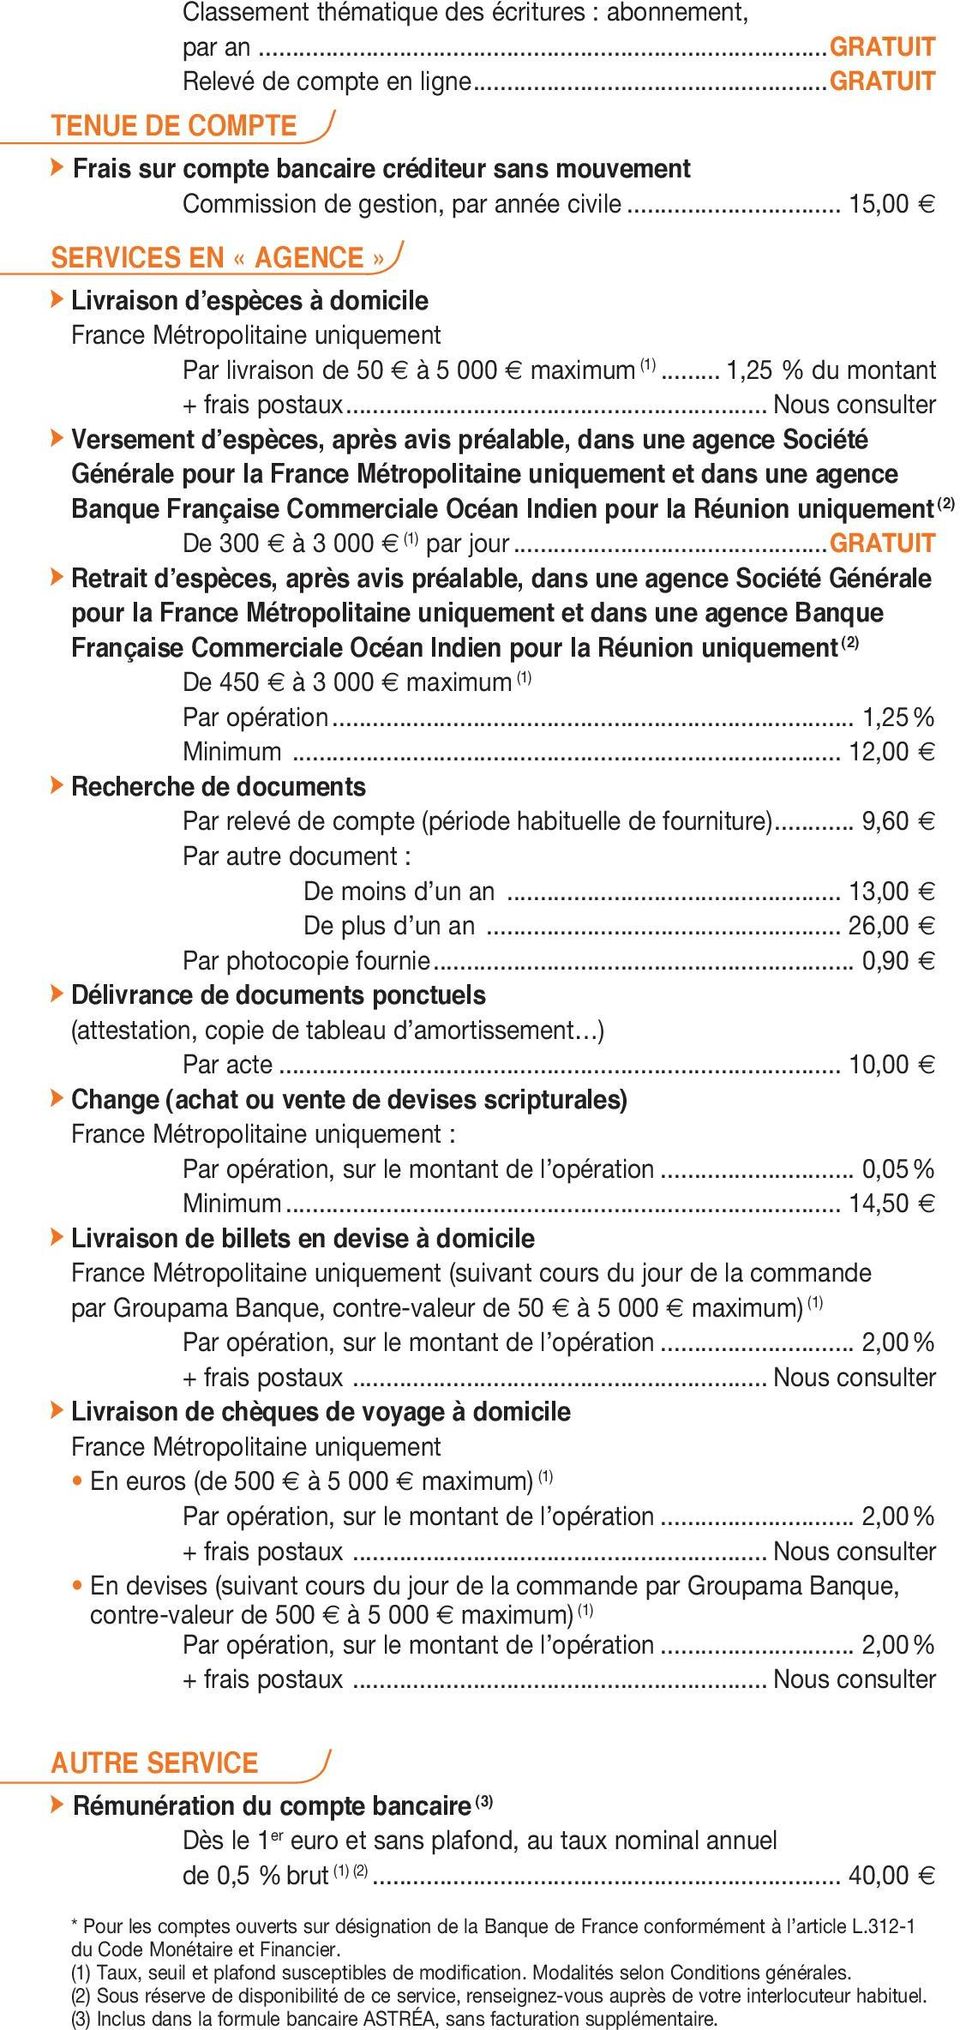 SERVICES EN «AGENCE» d Livraison d espèces à domicile France Métropolitaine uniquement Par livraison de 50 à 5 000 maximum (1)... 1,25 % du montant + frais postaux.